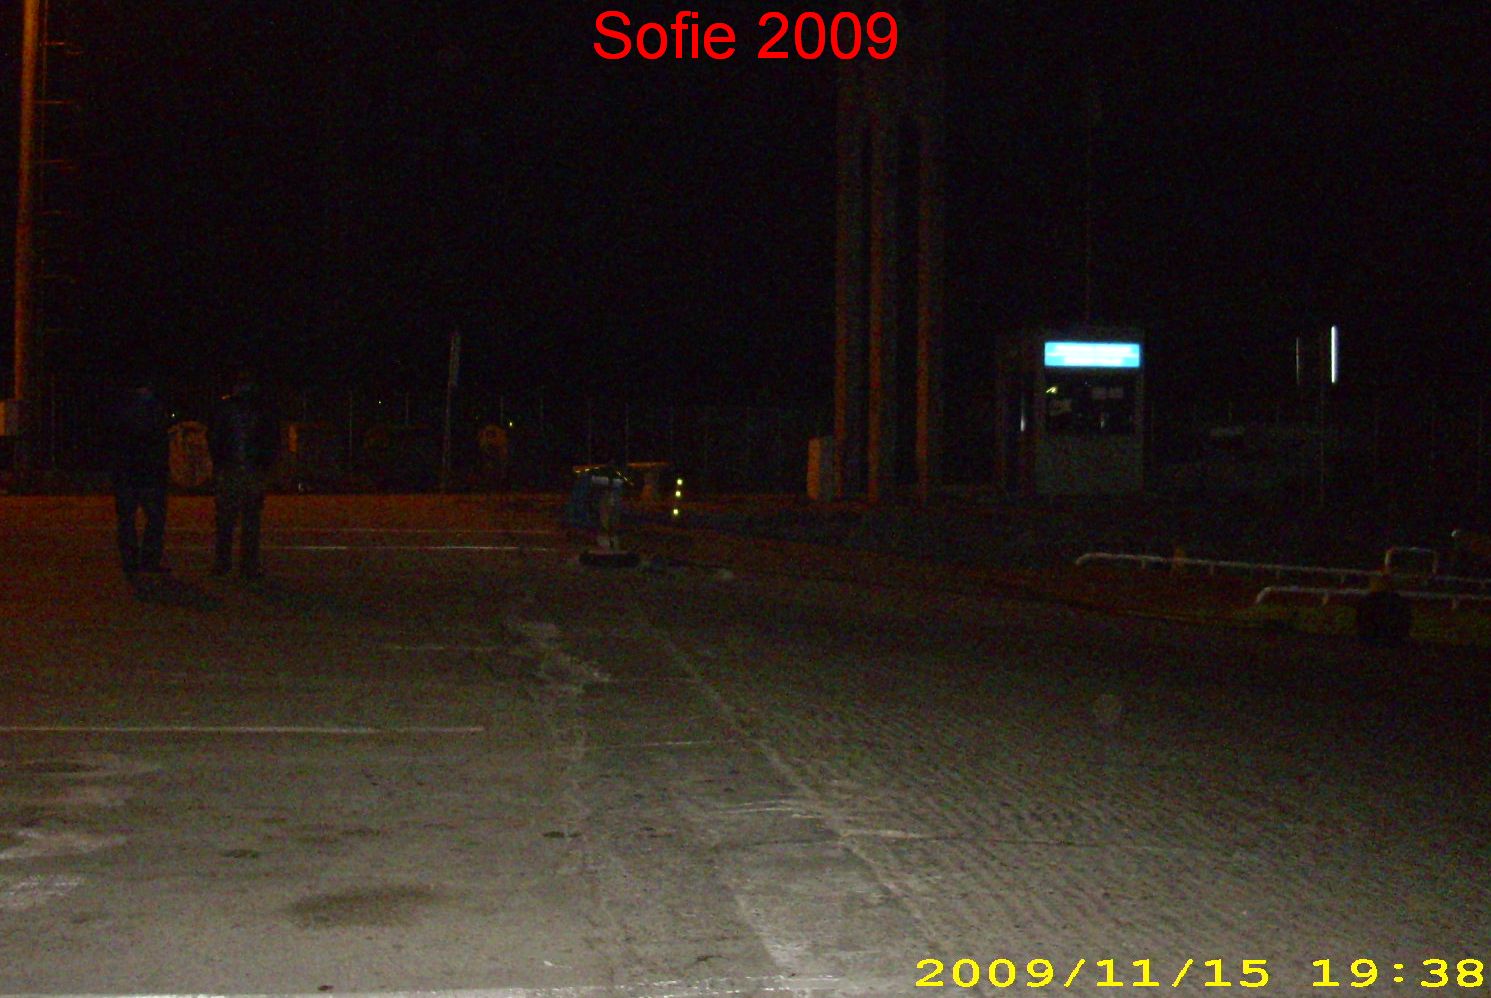 Sofie 2009 trajekt.